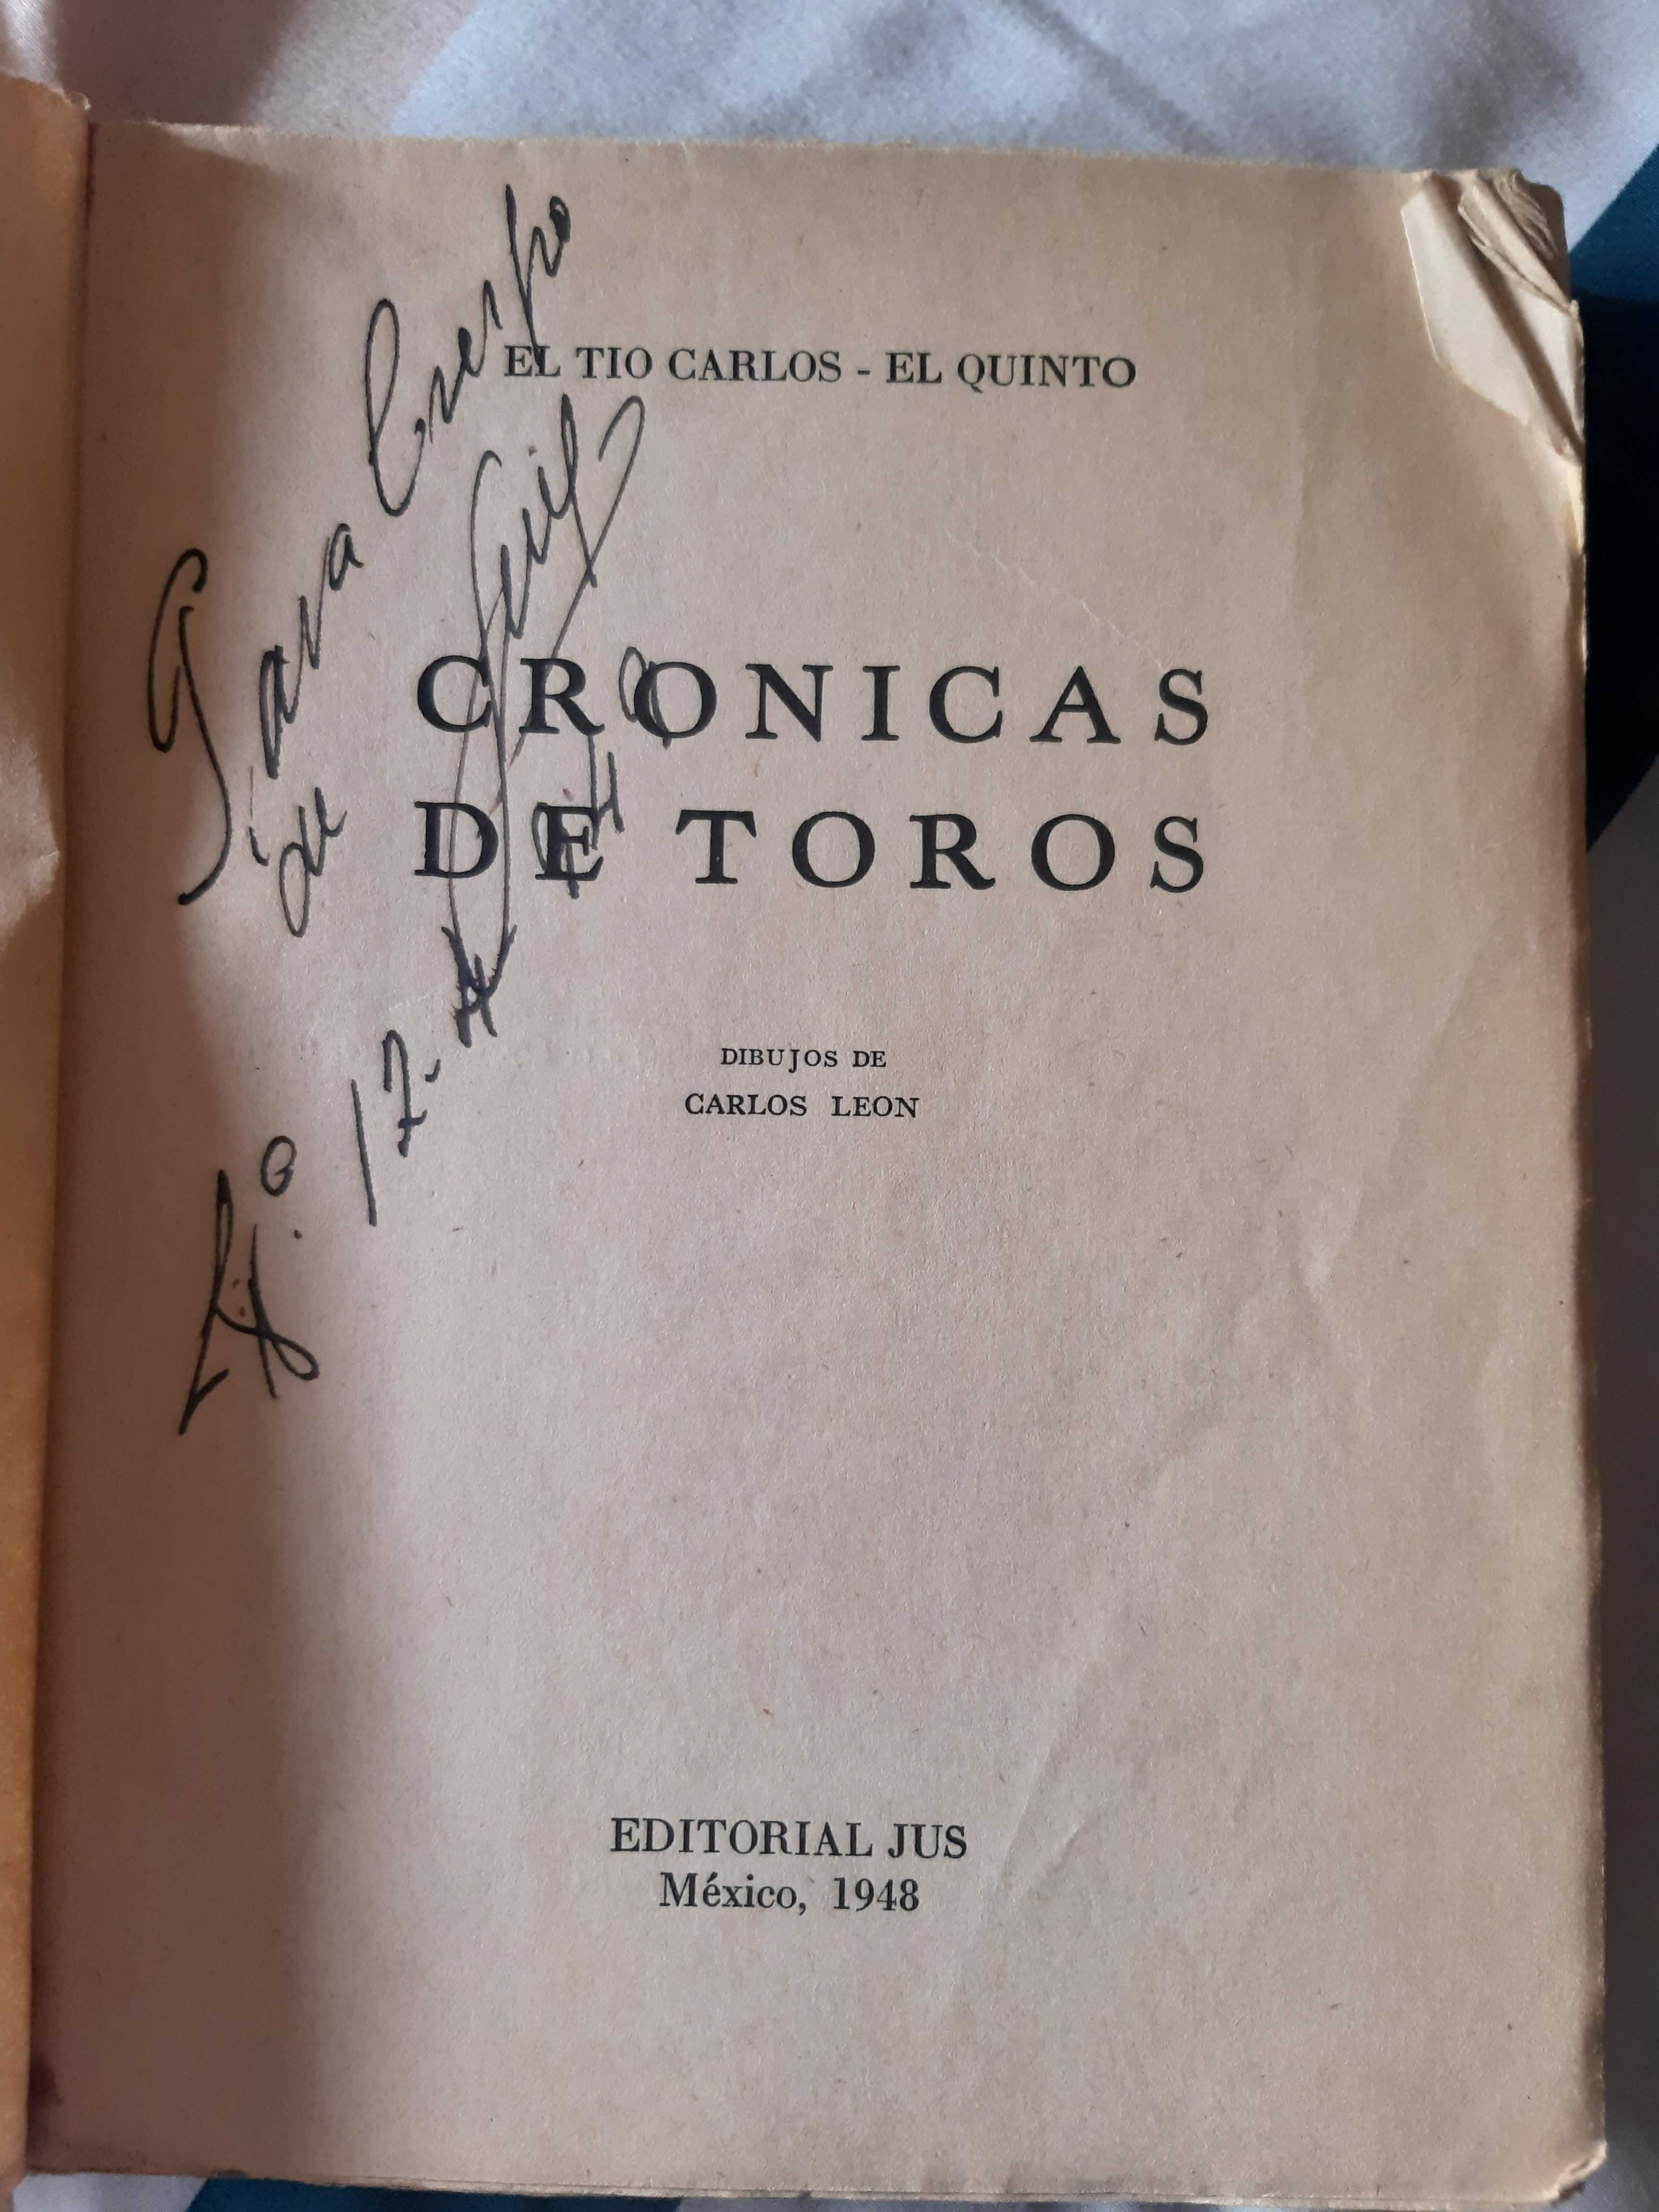 Livro Crónicas de Toros de Tio Carlos "El quinto"